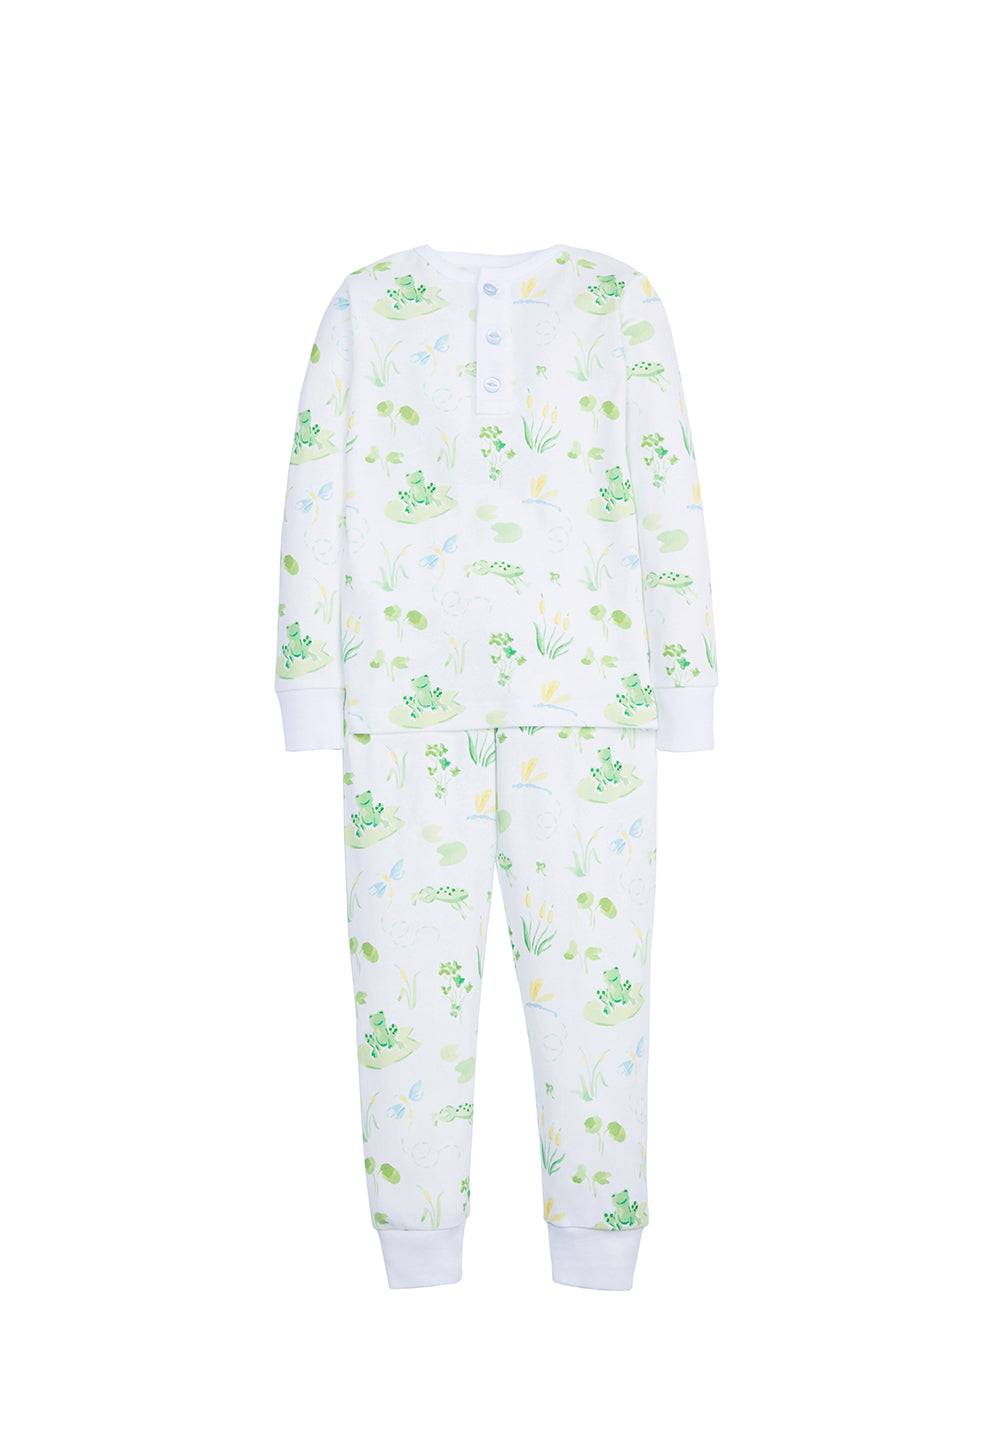 Boy Printed Pajamas - Frogs